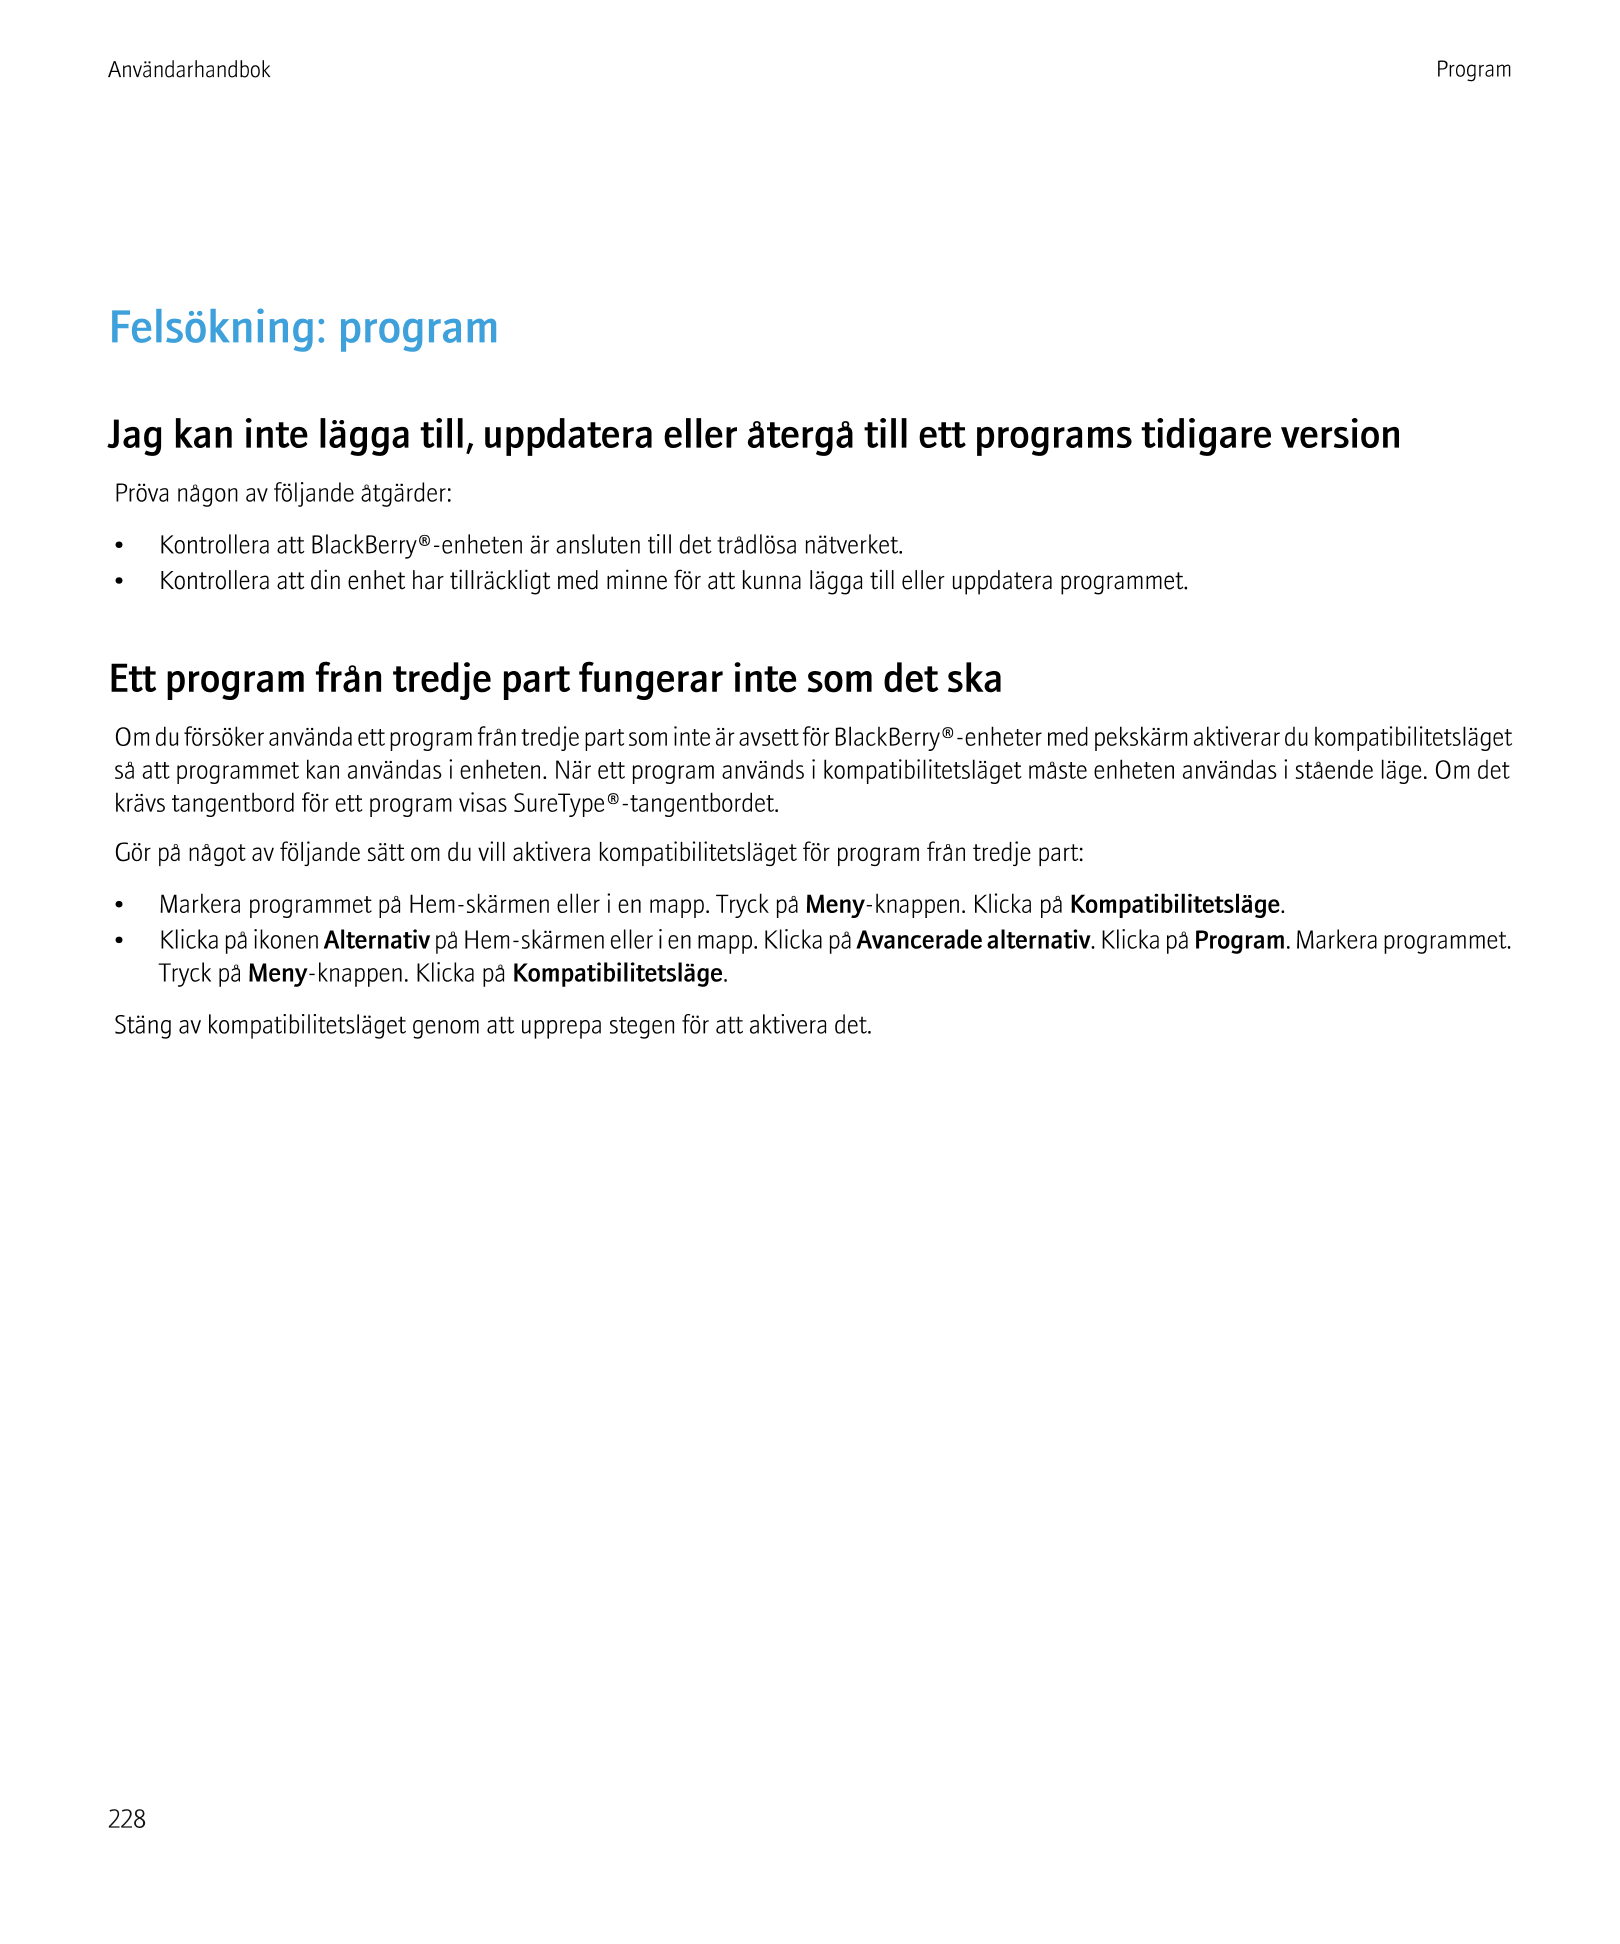 Användarhandbok Program
Felsökning: program
Jag kan inte lägga till, uppdatera eller återgå till ett programs tidigare version
P